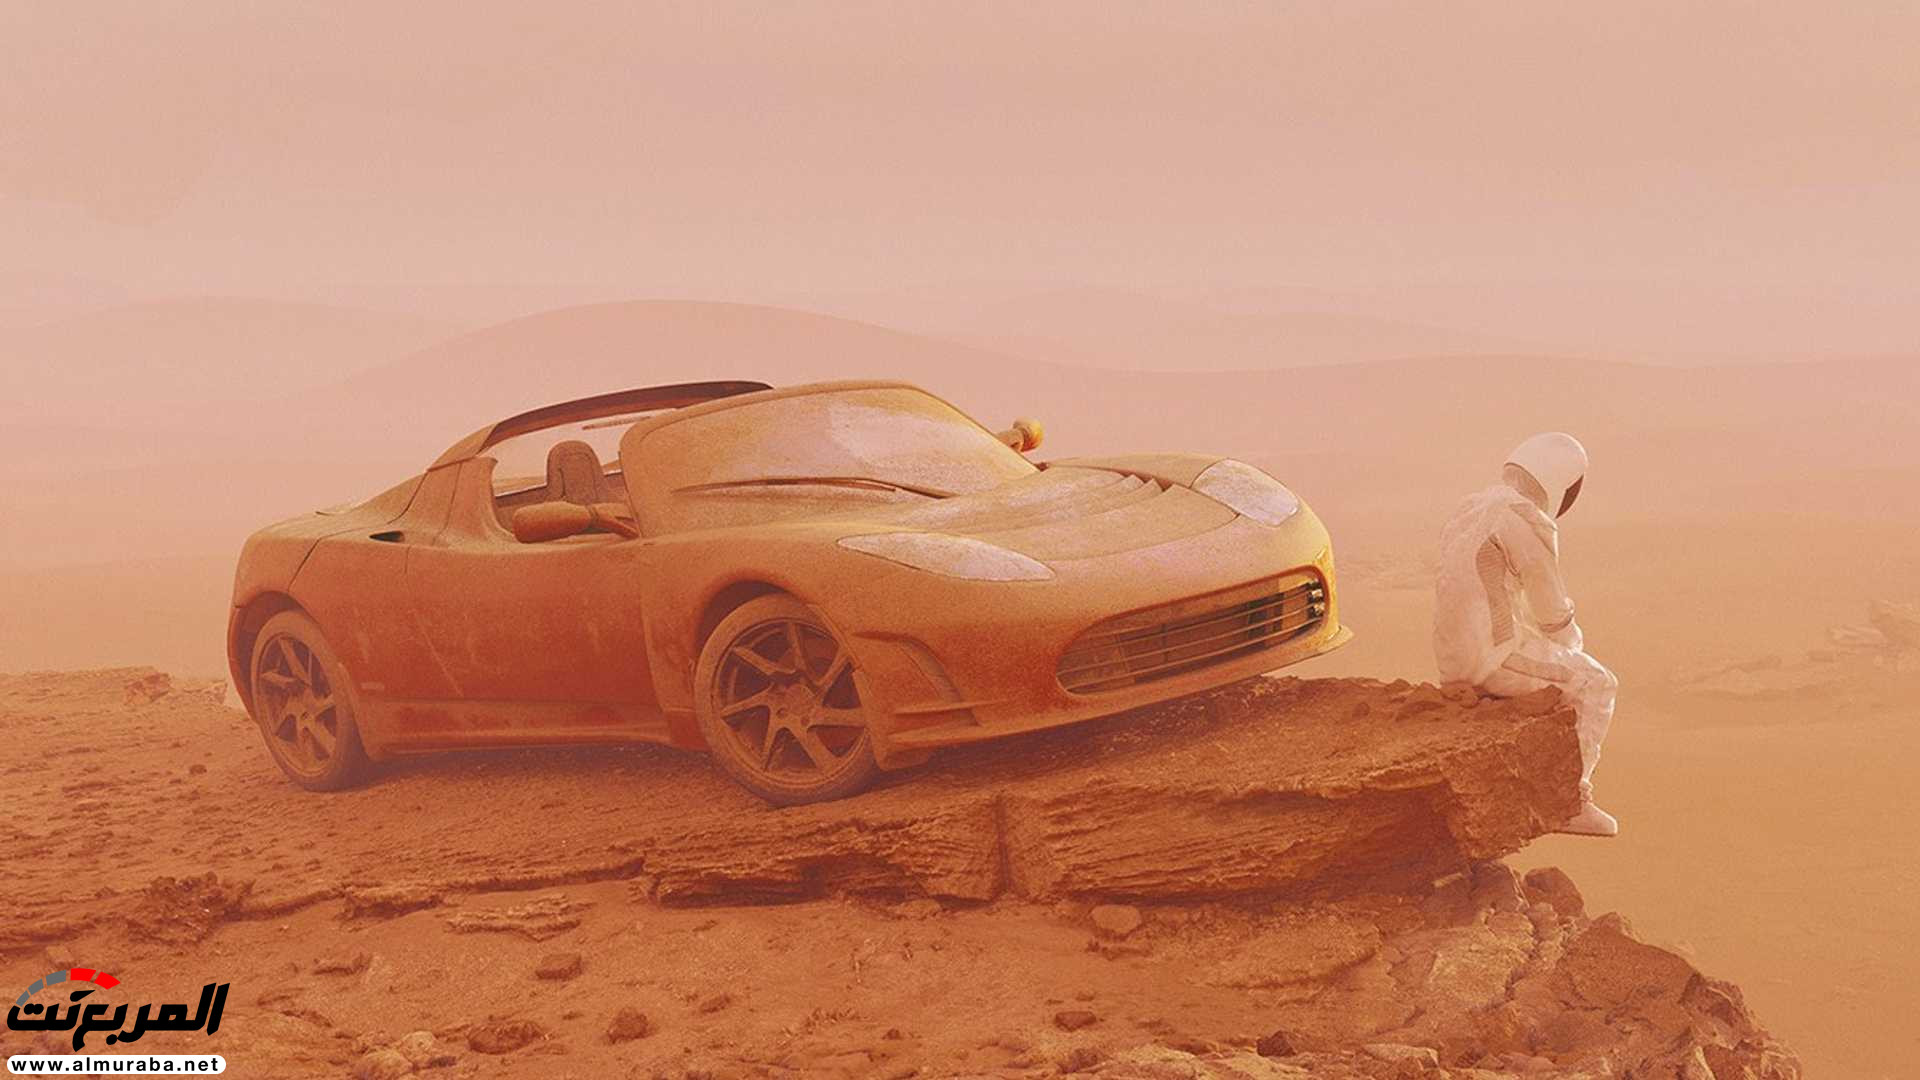 تيسلا رودستر وصلت إلى المريخ في صور تخيلية 1